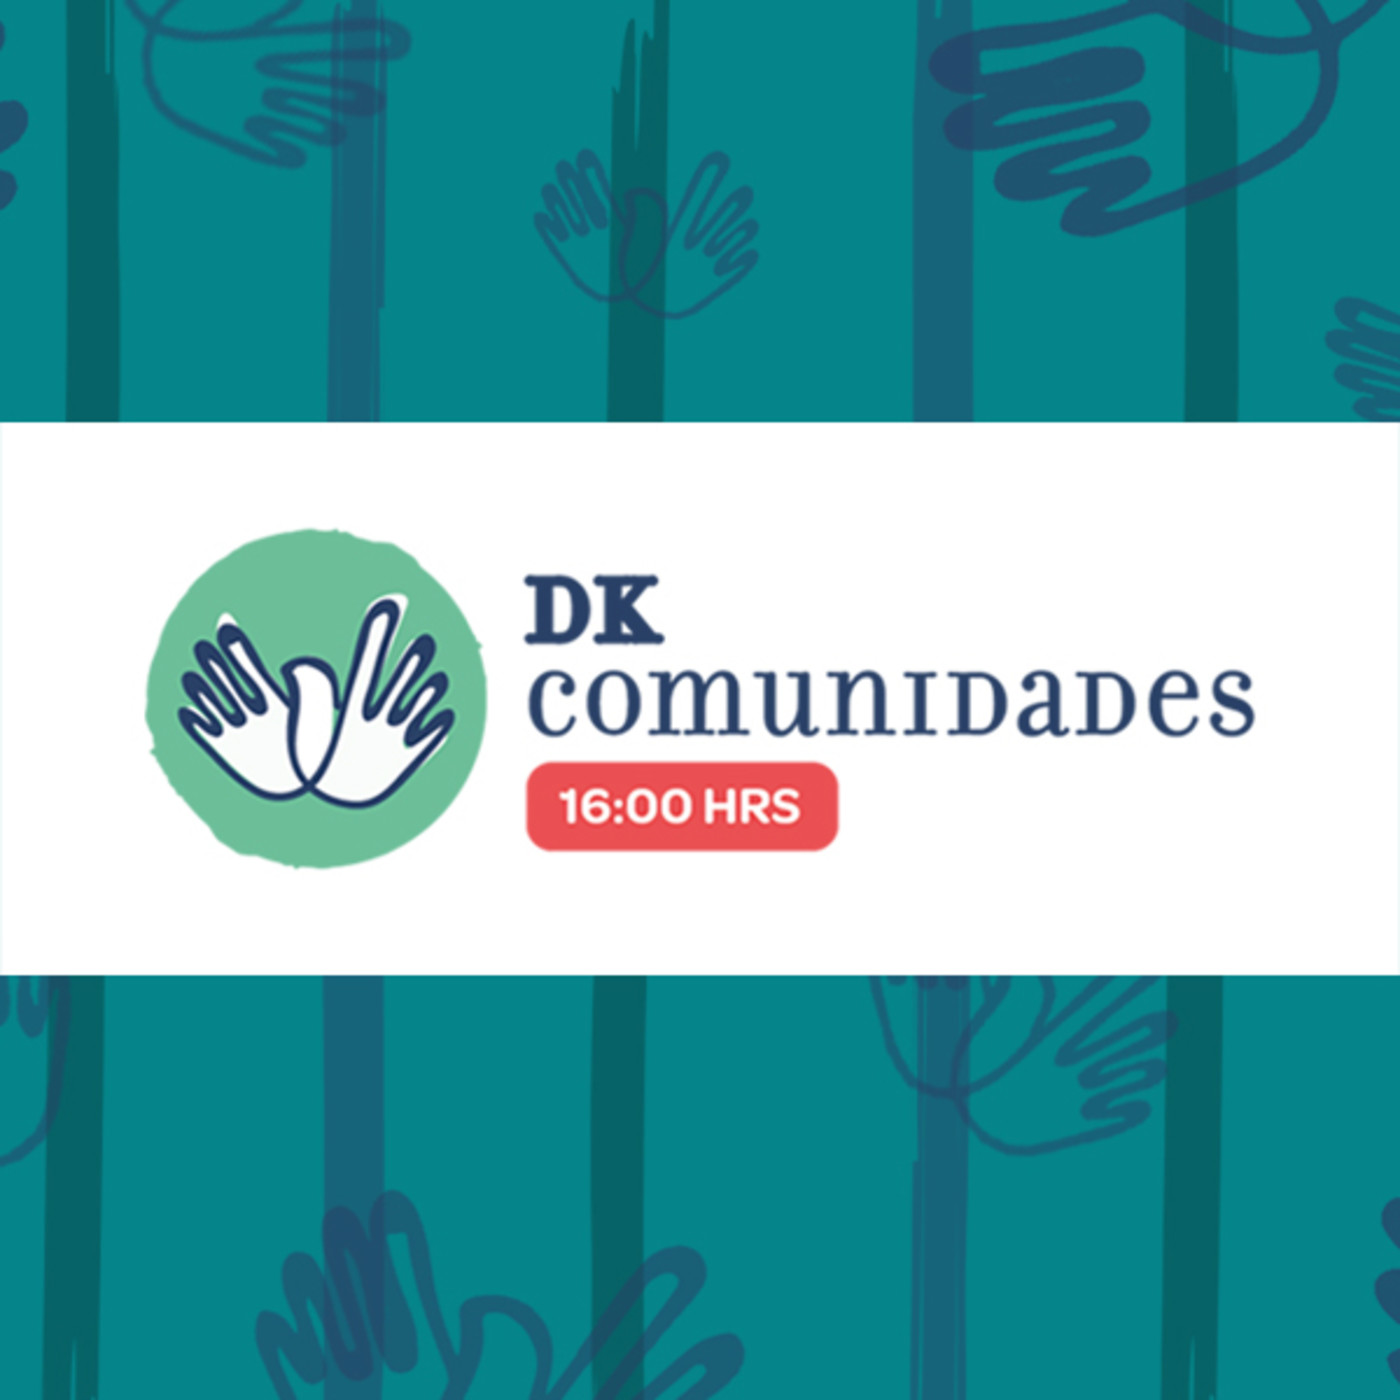 DK Comunidades y el Instituto Bíblico Católico para "Cursos de Verano".